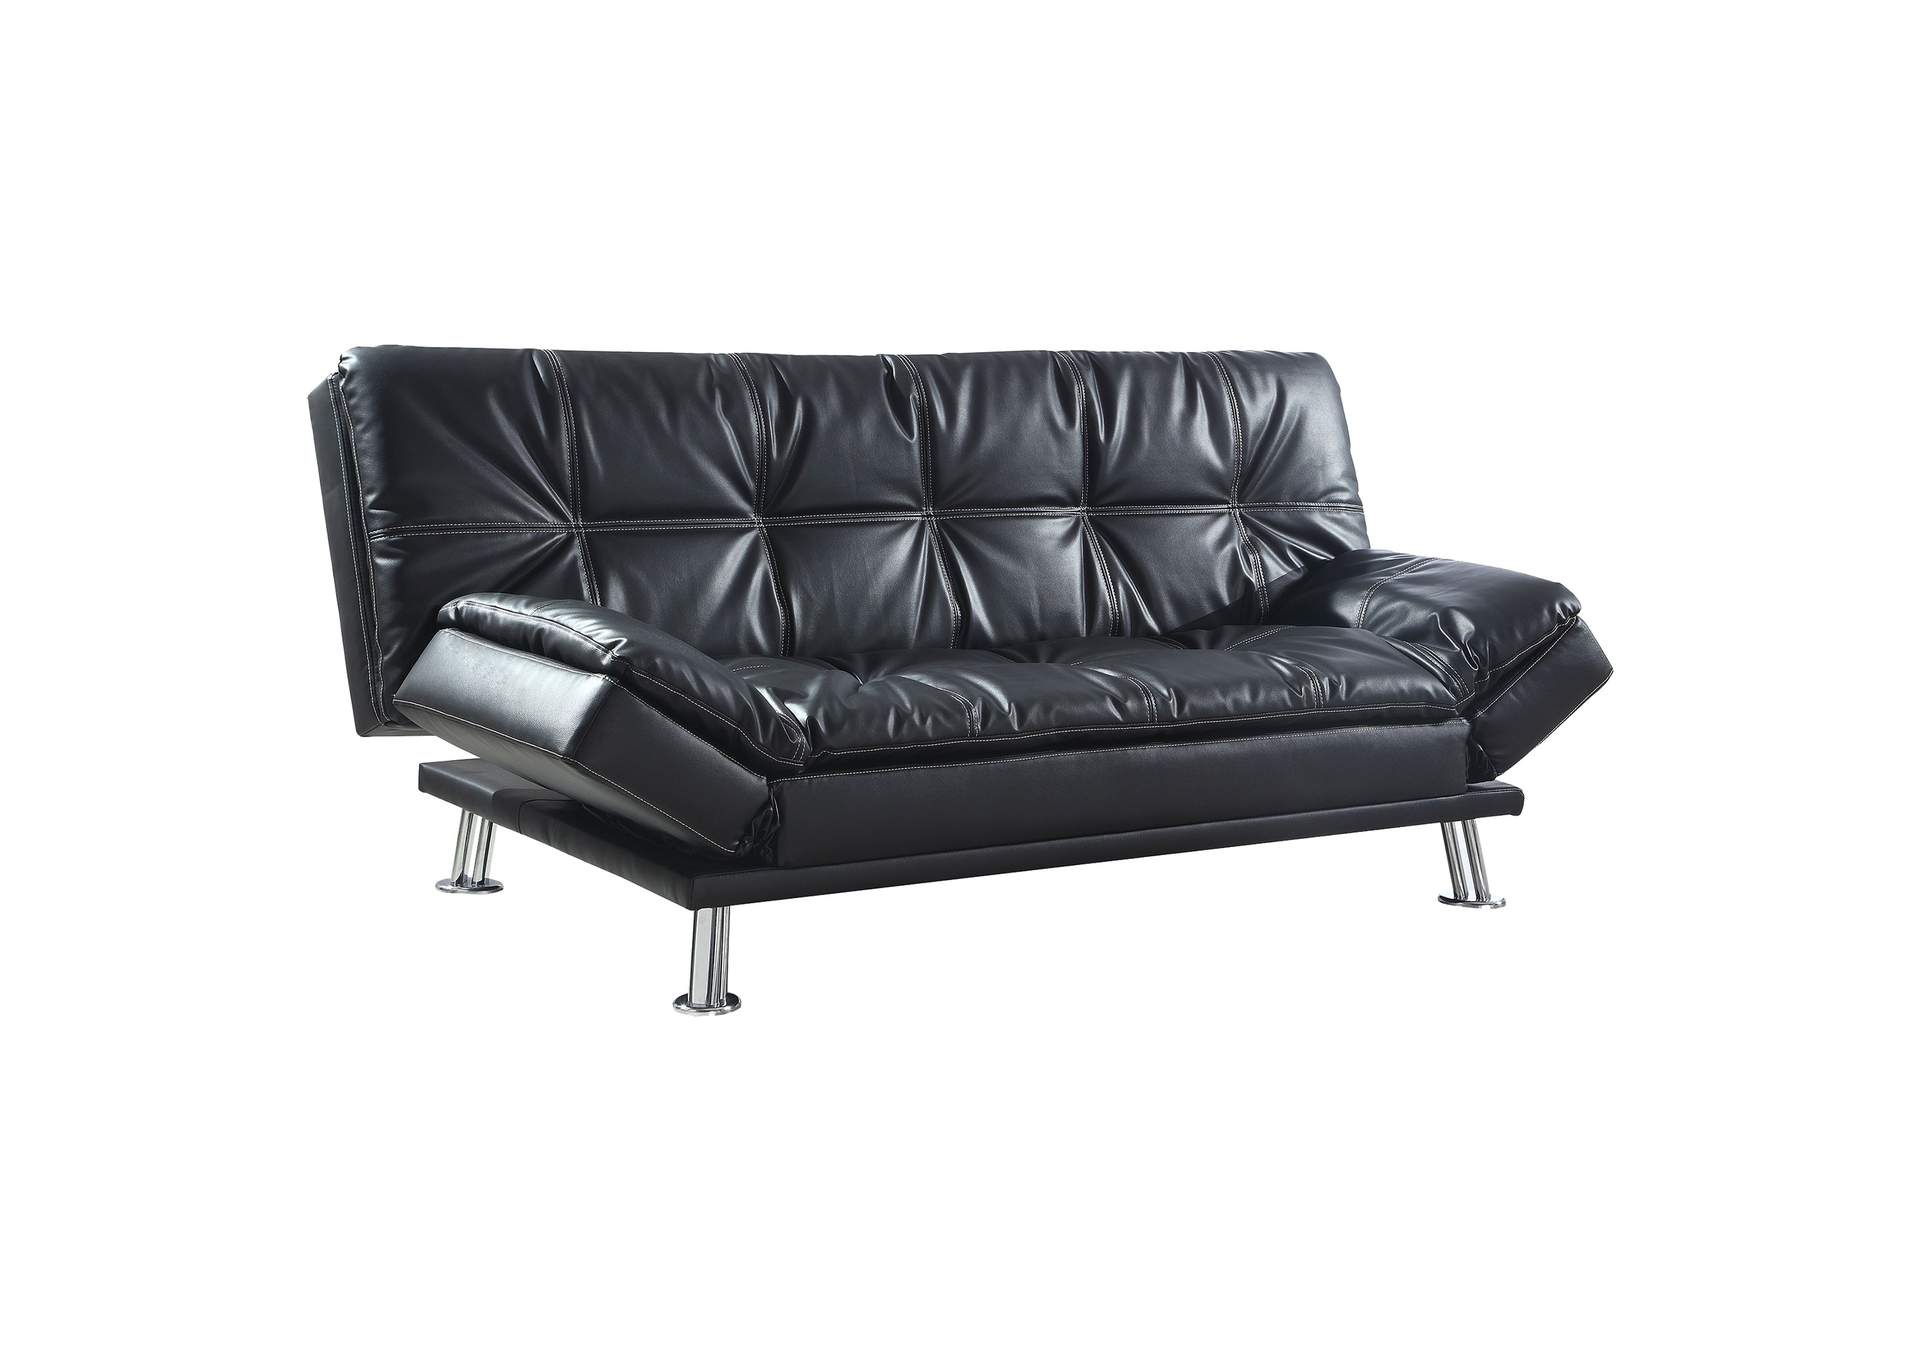 Dilleston Tufted Back Upholstered Sofa Bed Black,Coaster Furniture